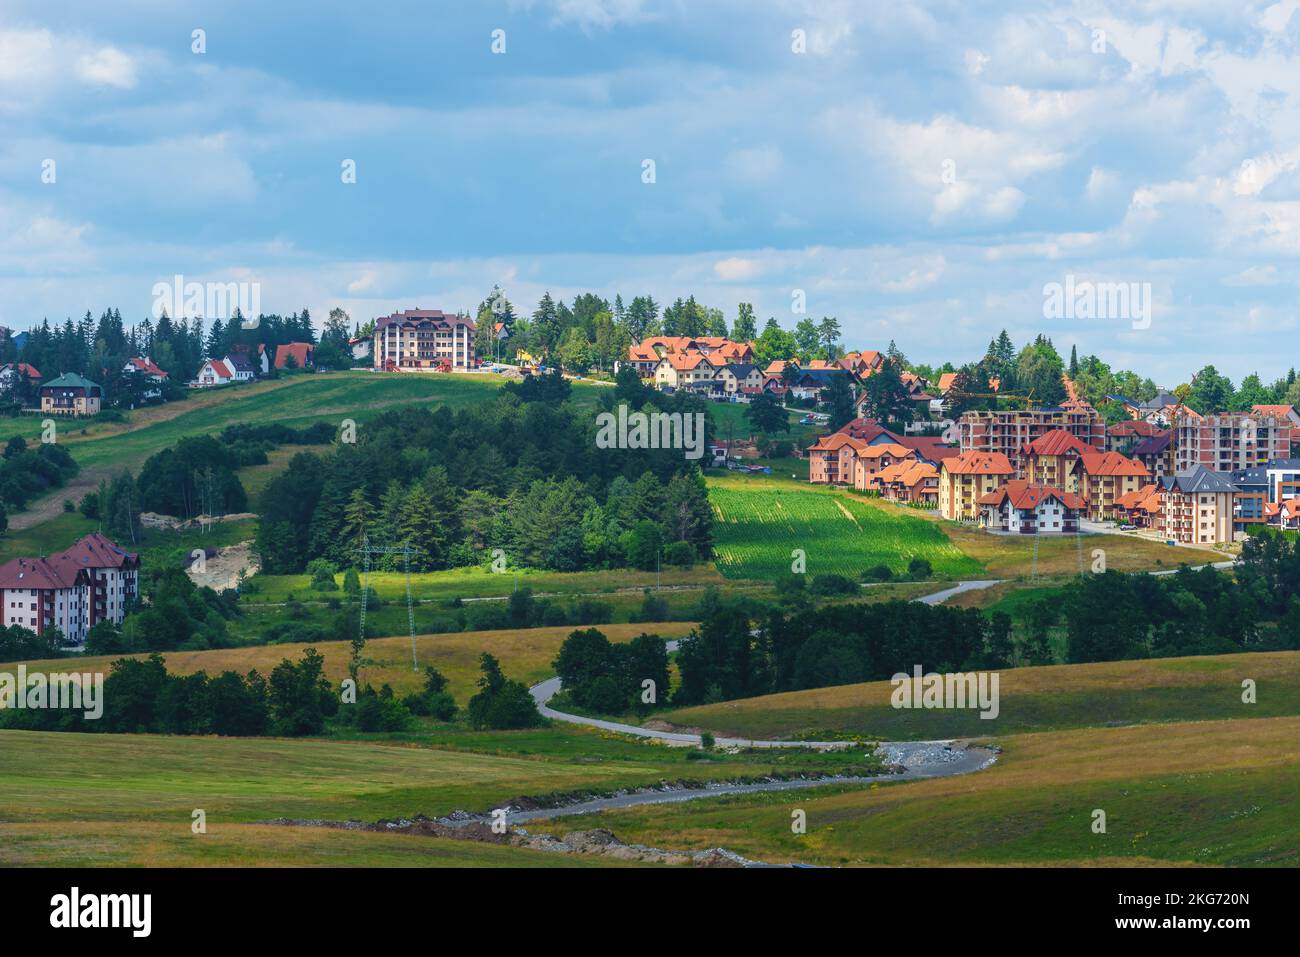 Schöne malerische Landschaft Zlatibor Region mit unverwechselbaren architektonischen Stil Häuser verstreut über grüne Hügel an sonnigen Sommertag Stockfoto